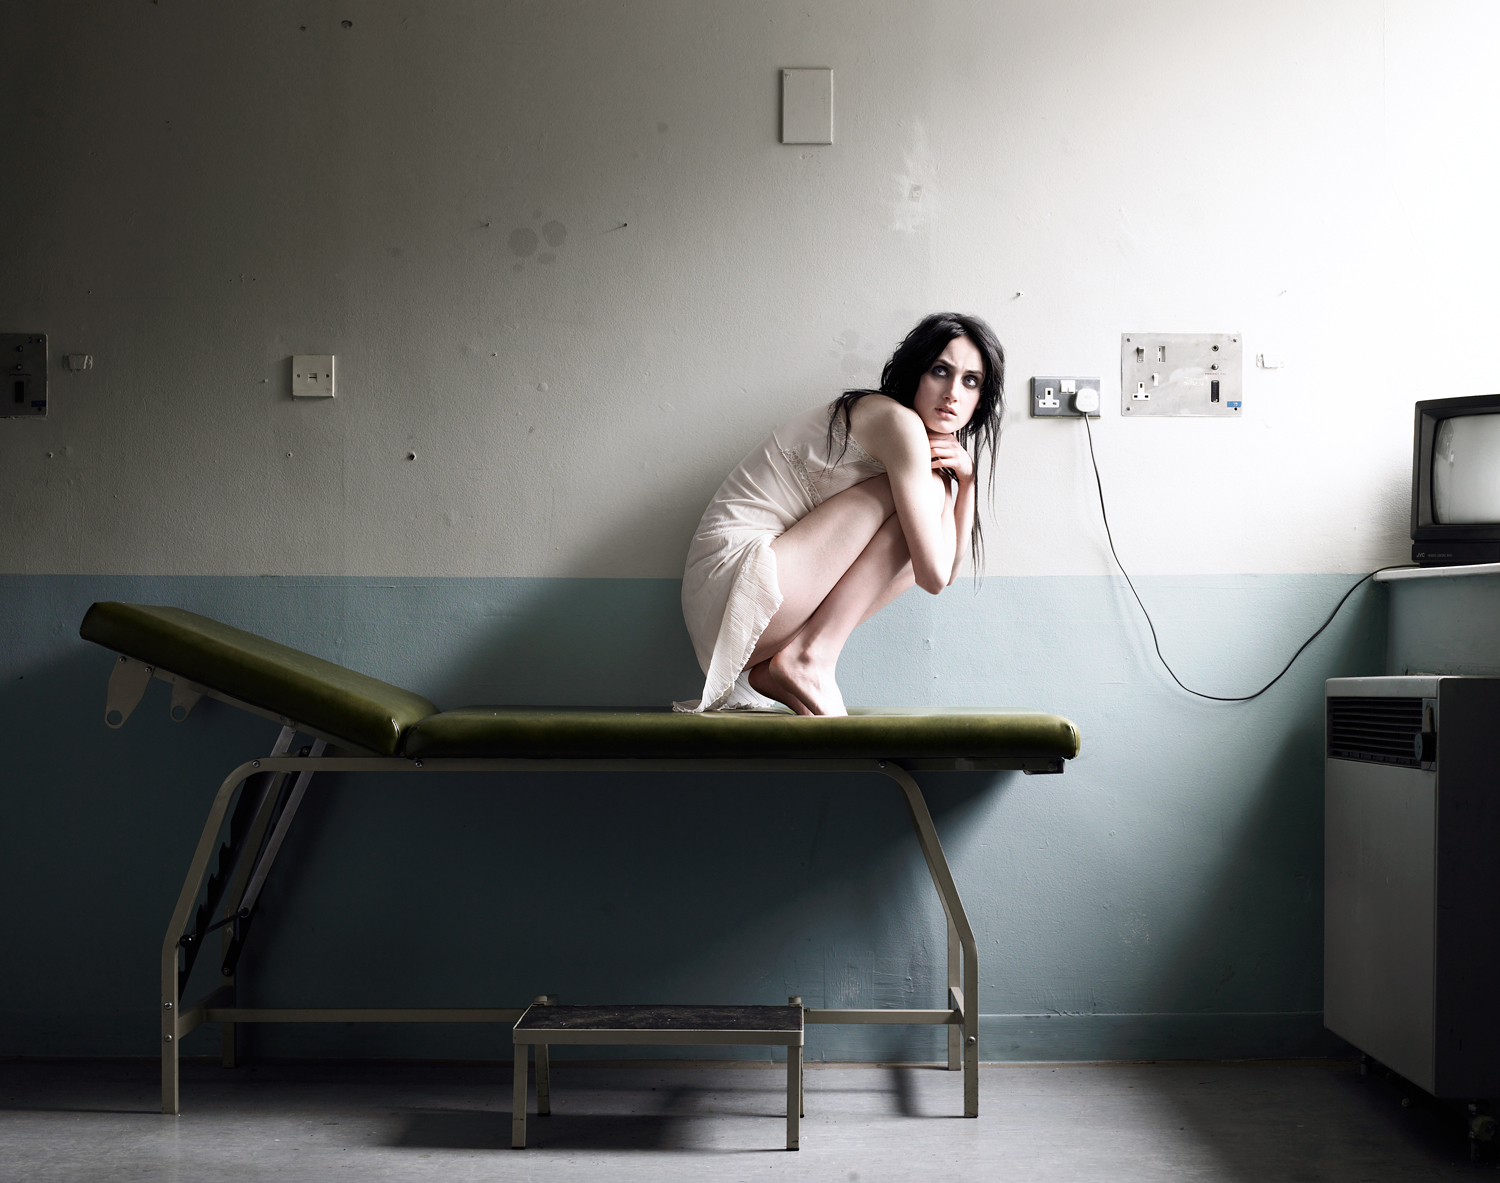  Photographer:&nbsp; Dylan Collard &nbsp;|&nbsp;Project:&nbsp; Hospital Test   | Styling and Props :&nbsp; Mim Quin-Harkin &nbsp;    &nbsp; 